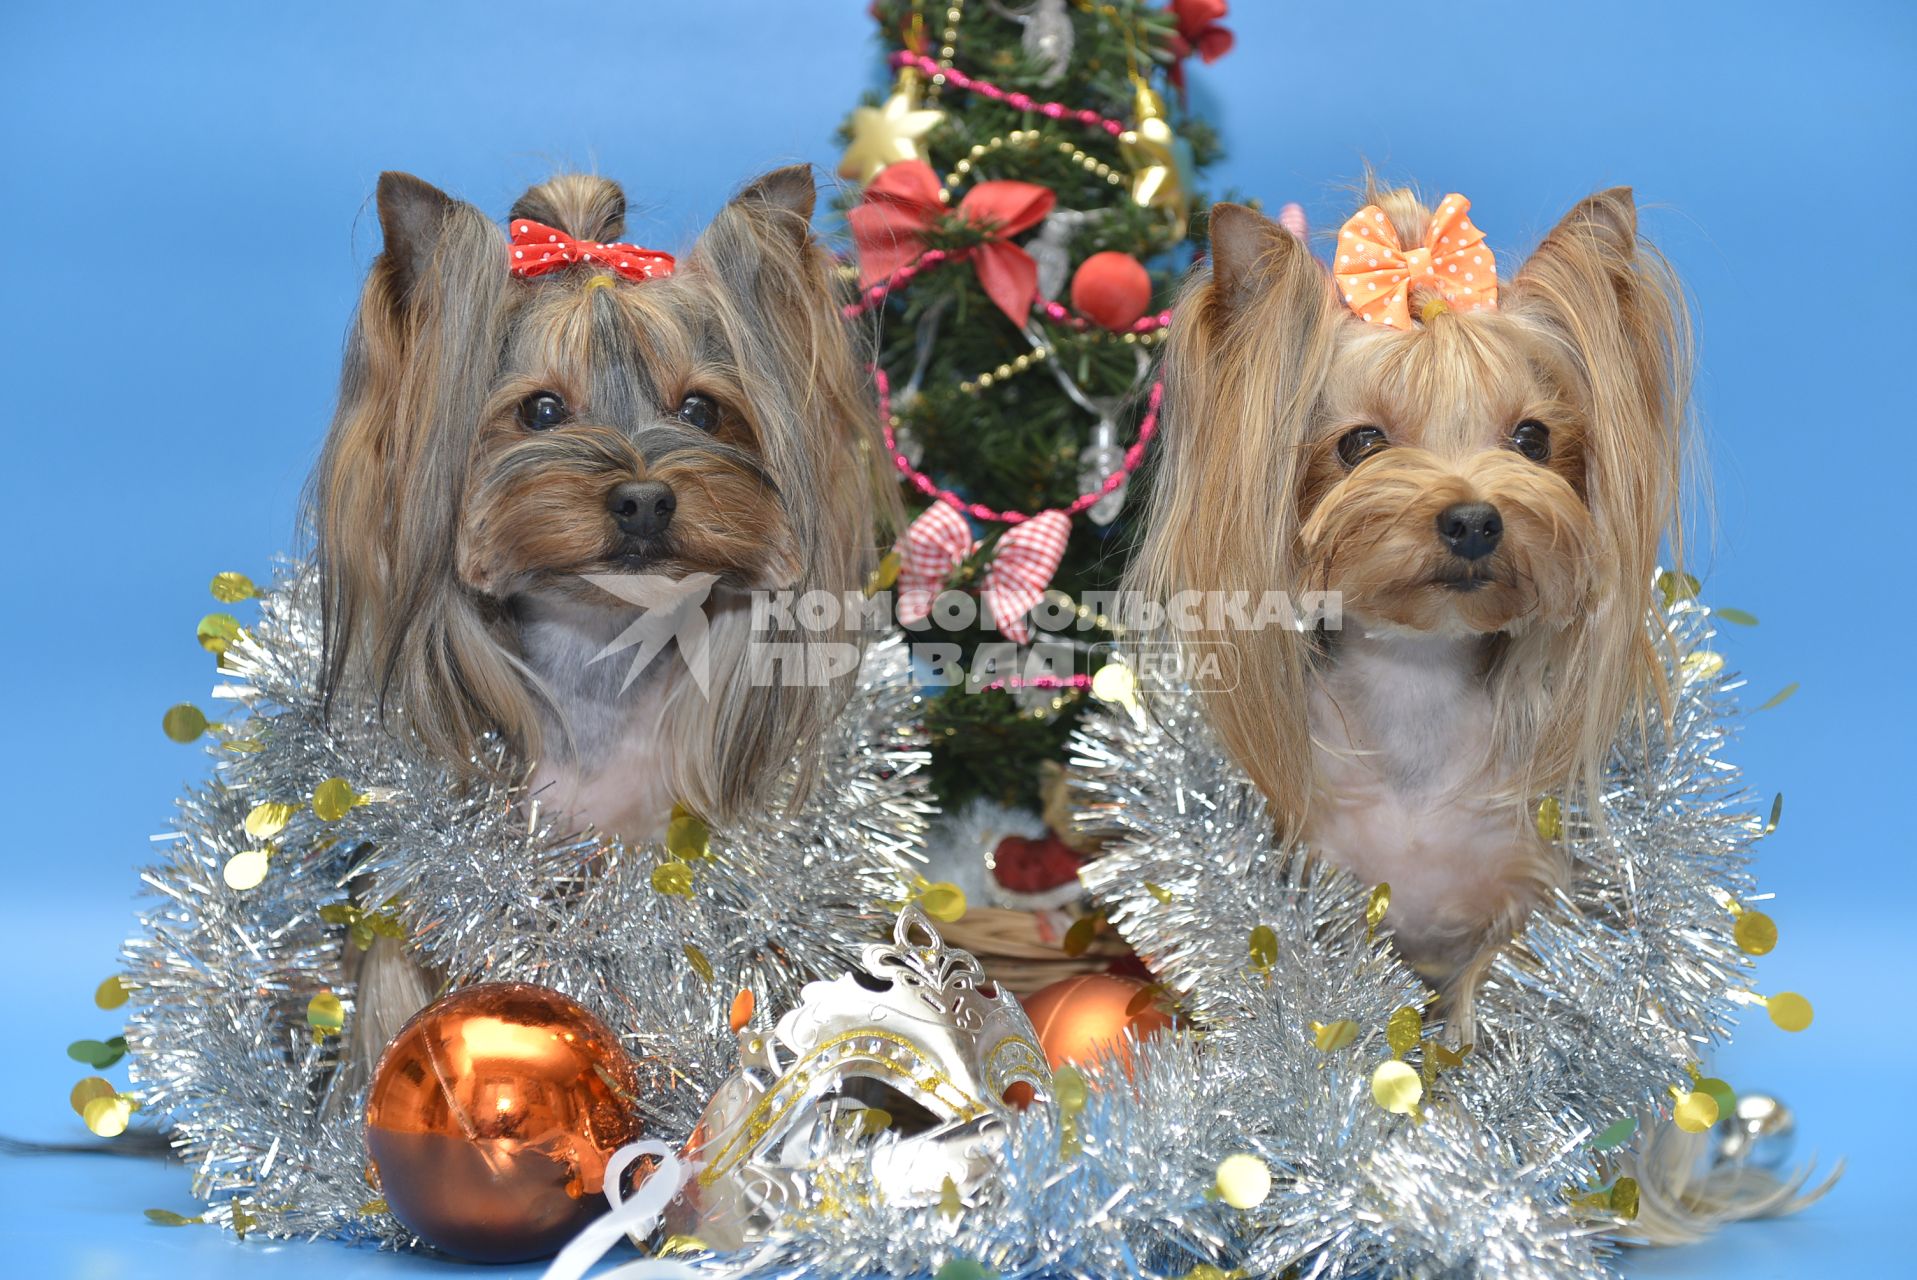 Тула. Собаки породы йоркширский терьер у новогодней елки.